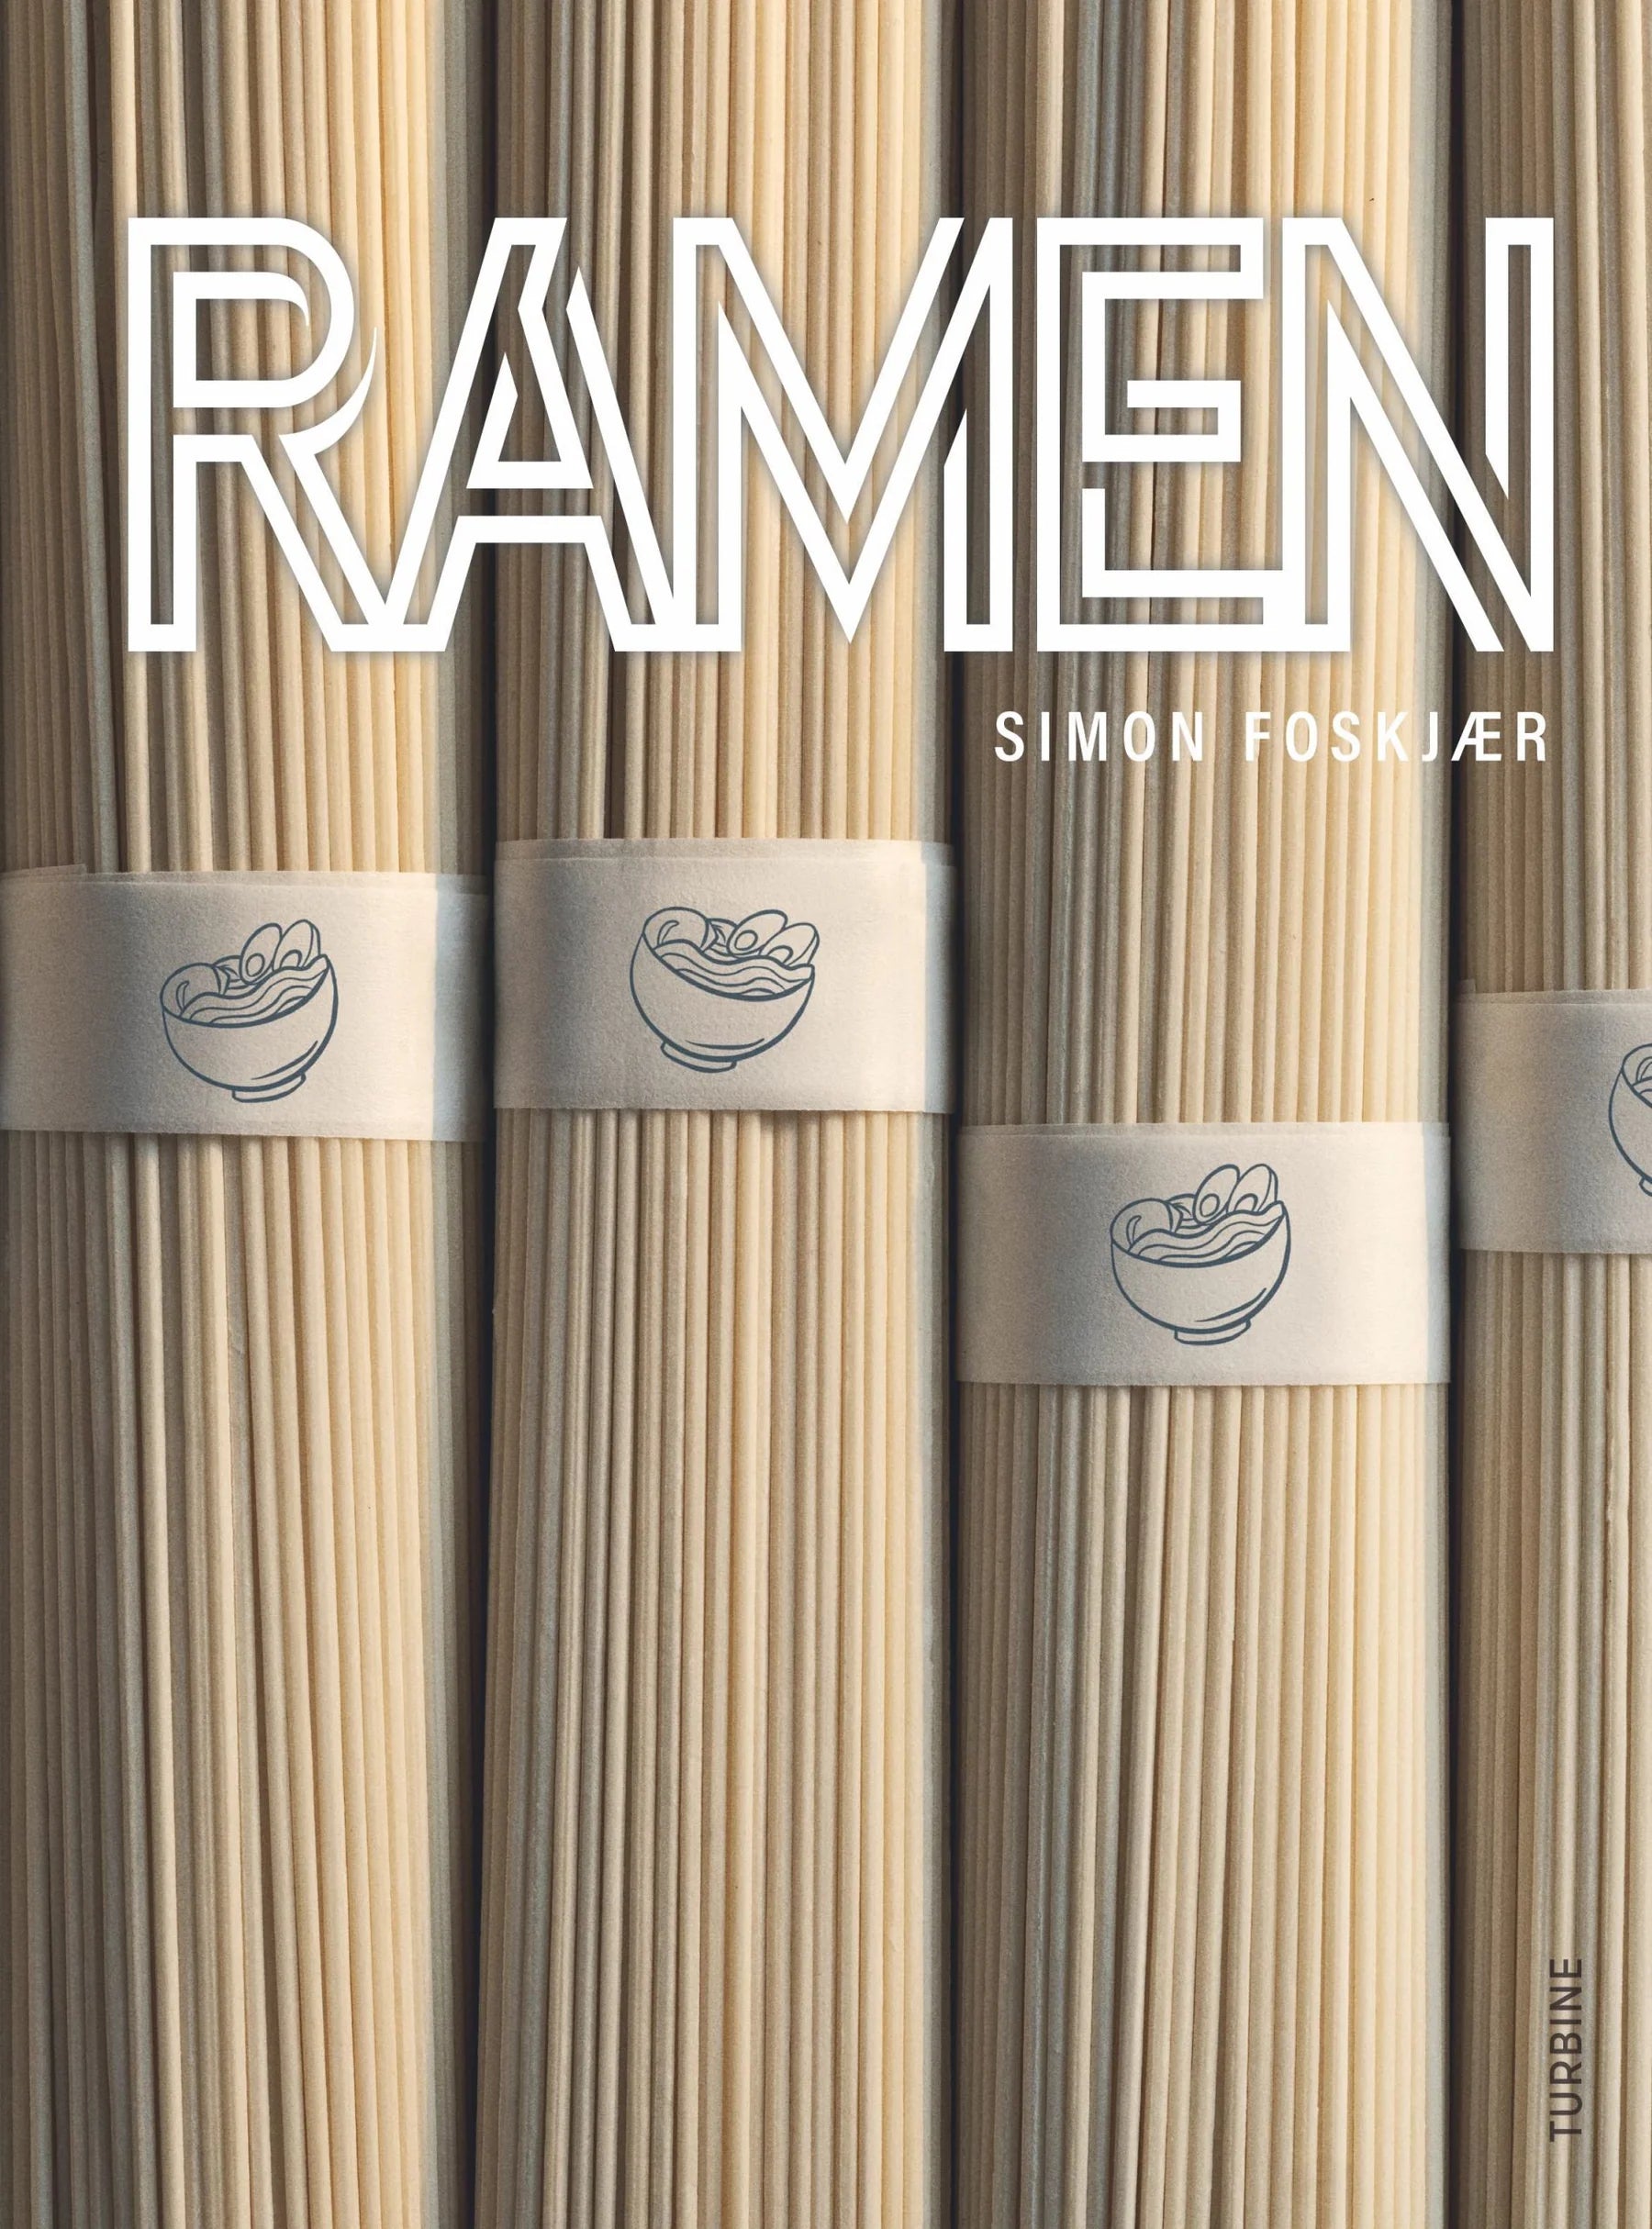 Coffee table book - Ramen